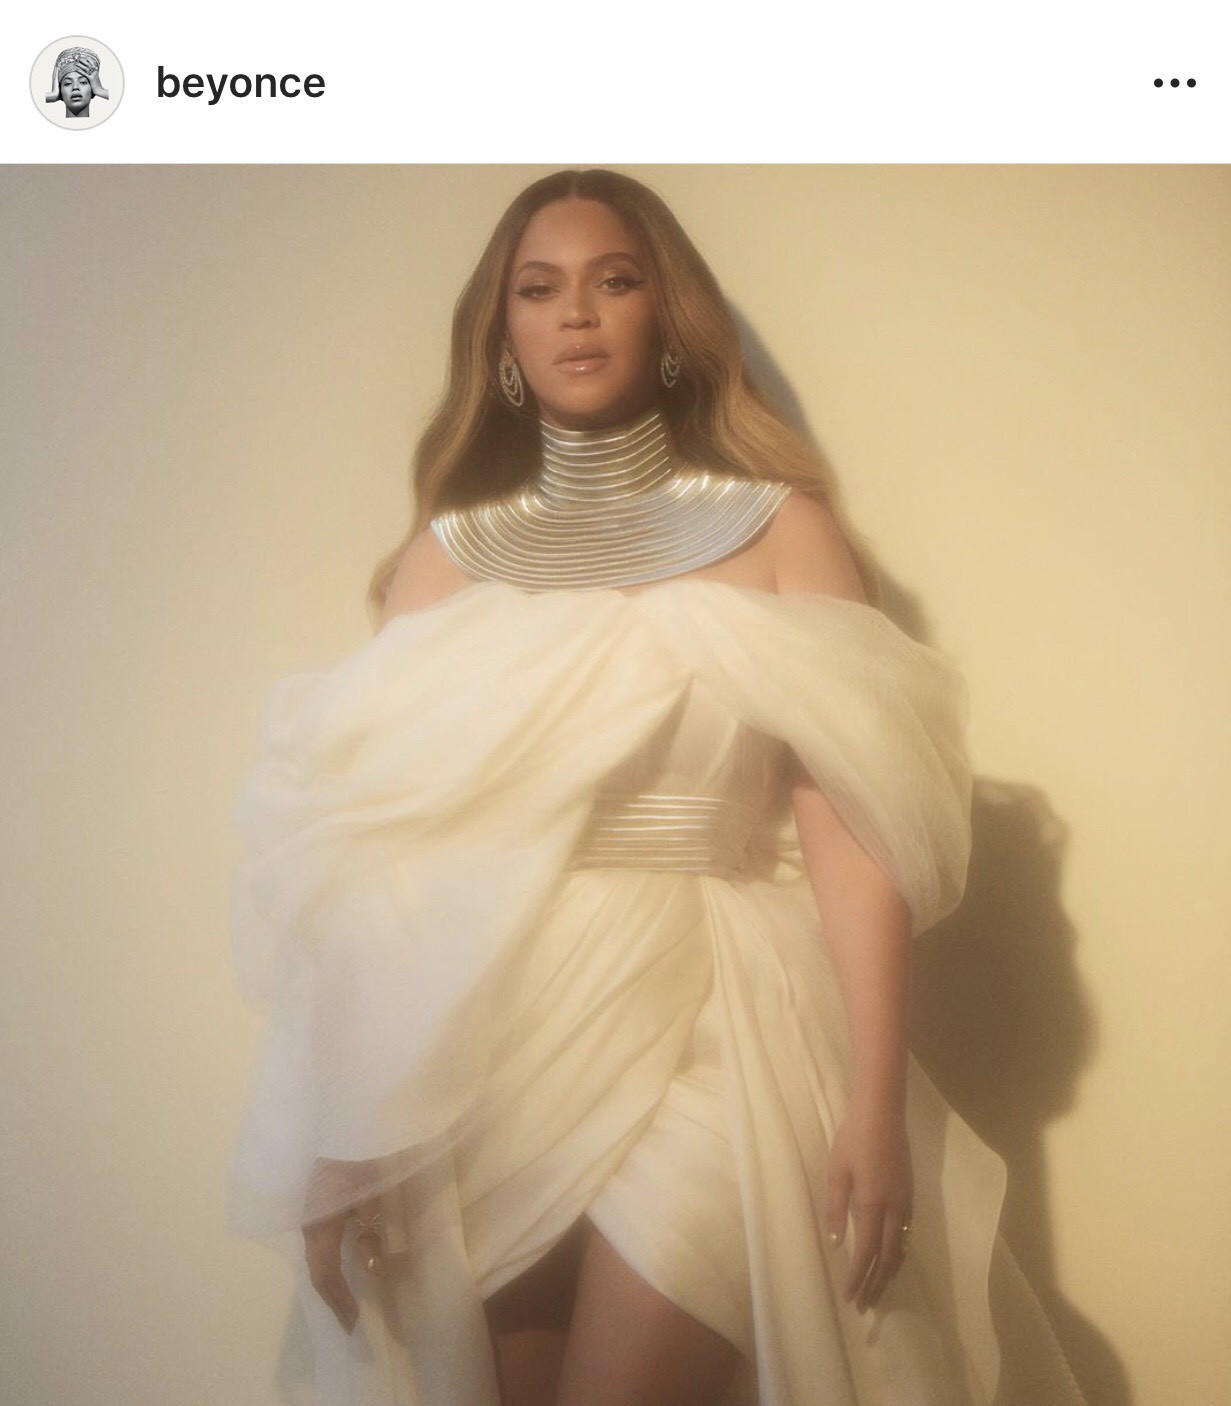 Beyonce mặc đầm của NTK Phương My: Một thiết kế độc nhất vô nhị dành riêng cho nữ diva - Ảnh 3.